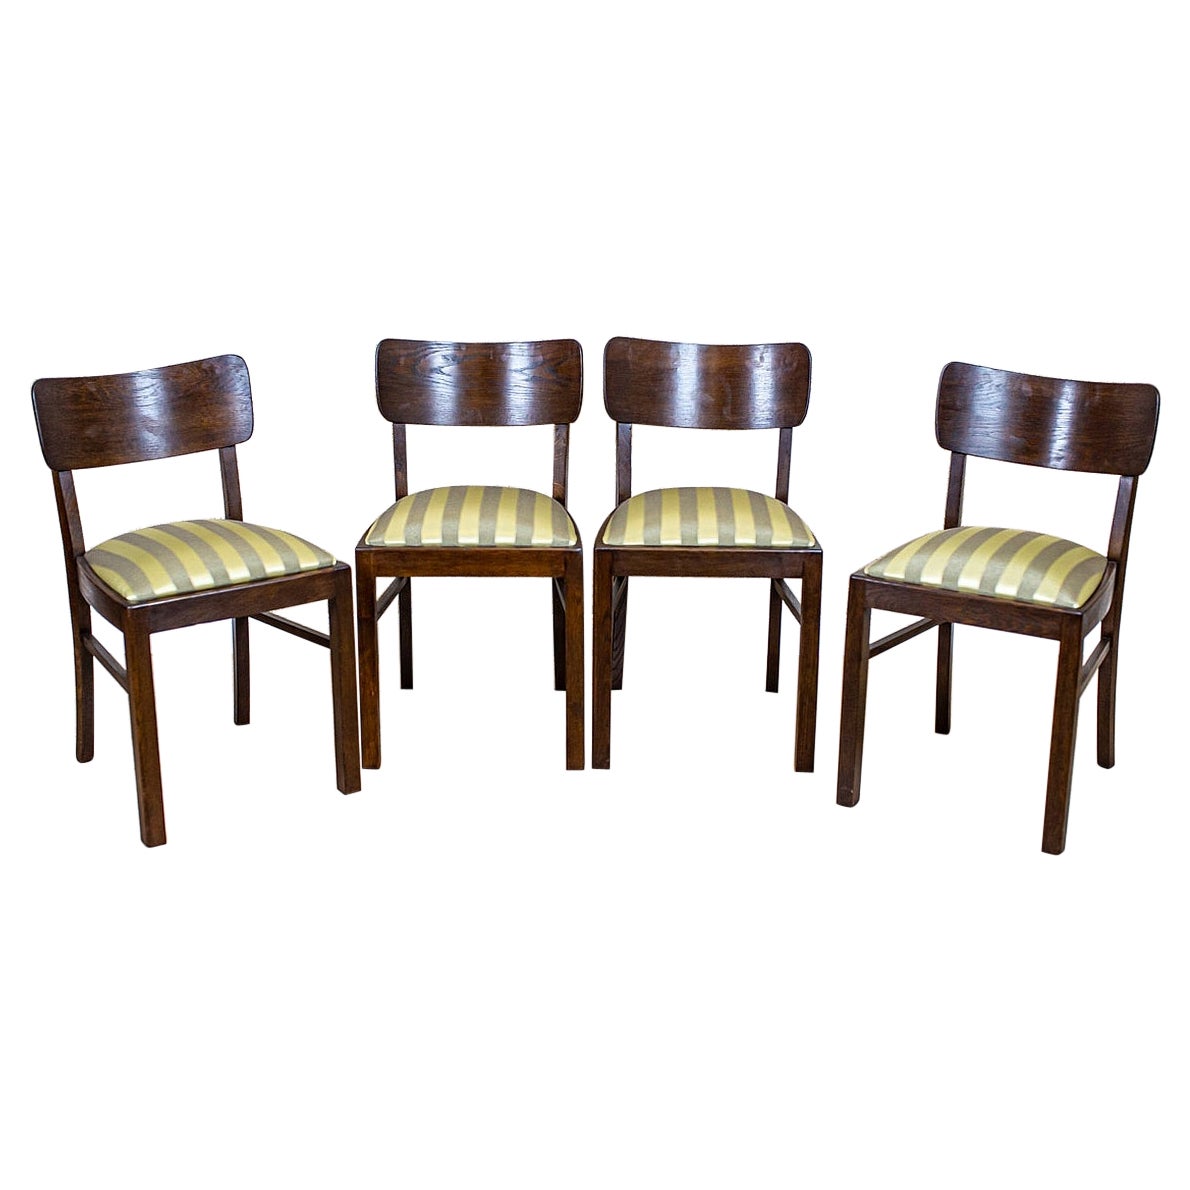 Quatre chaises Art Déco en chêne Thonet à revêtement rayé